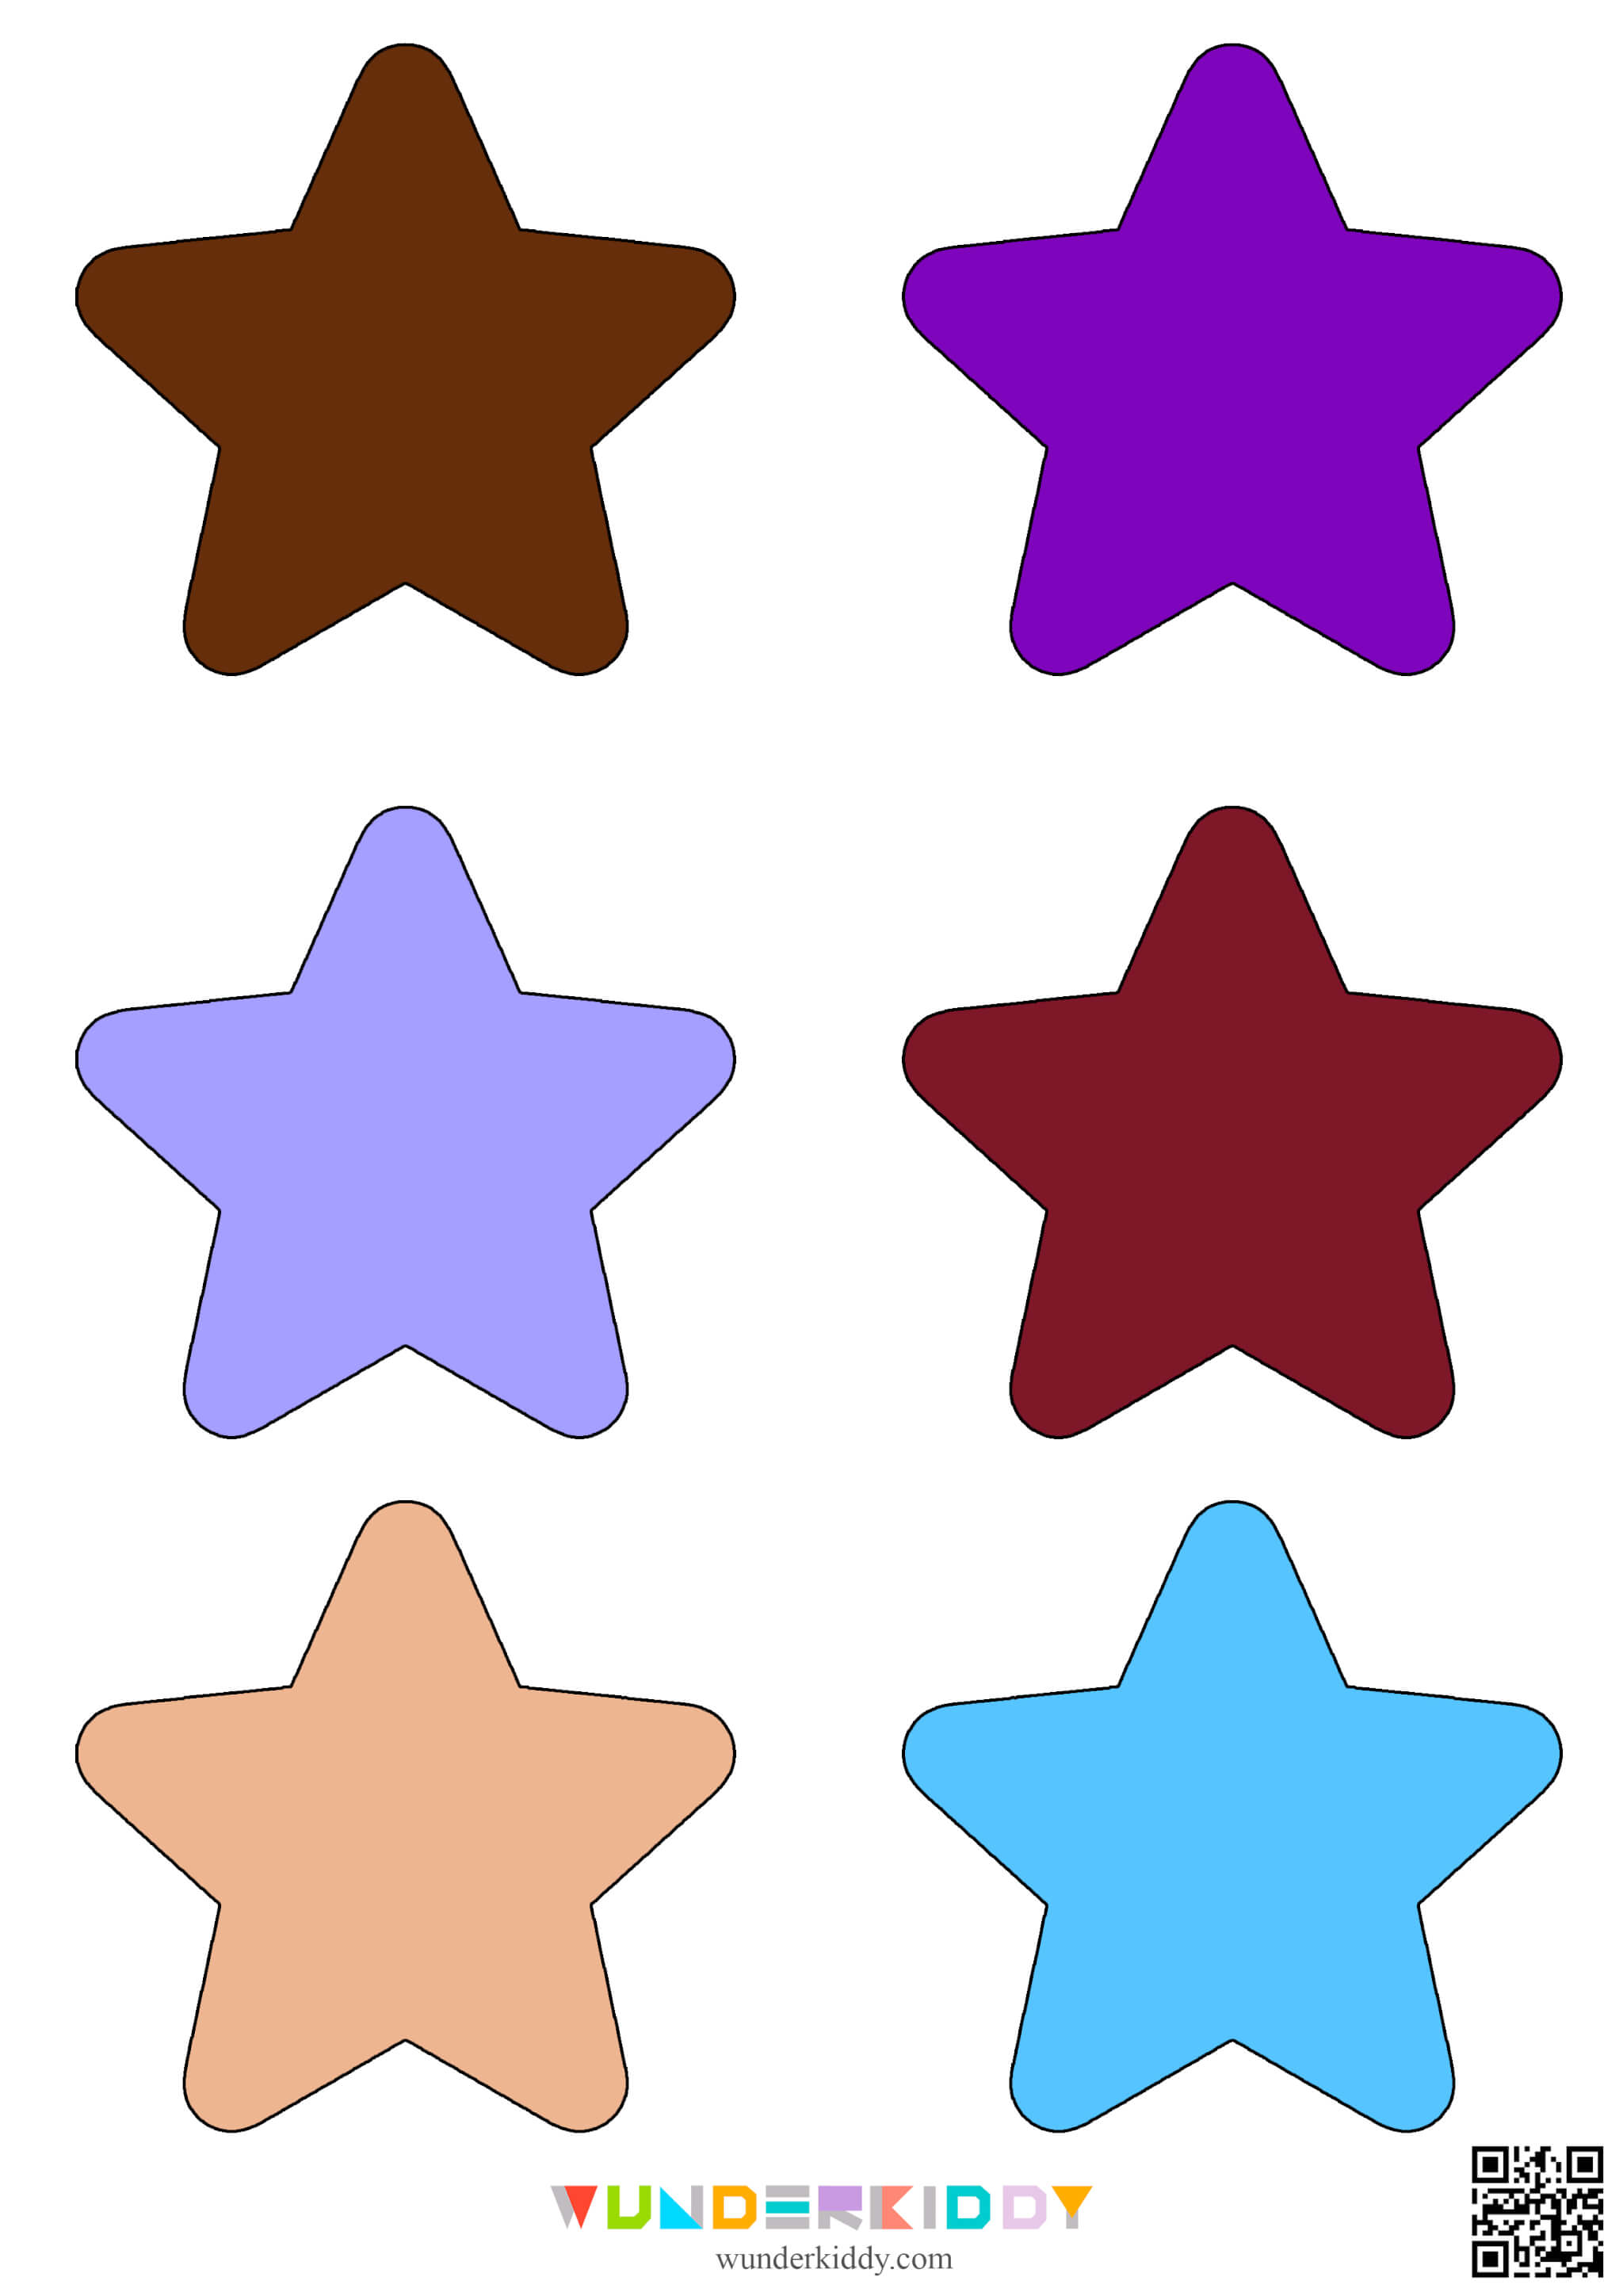 Printable Star Template - Image 3